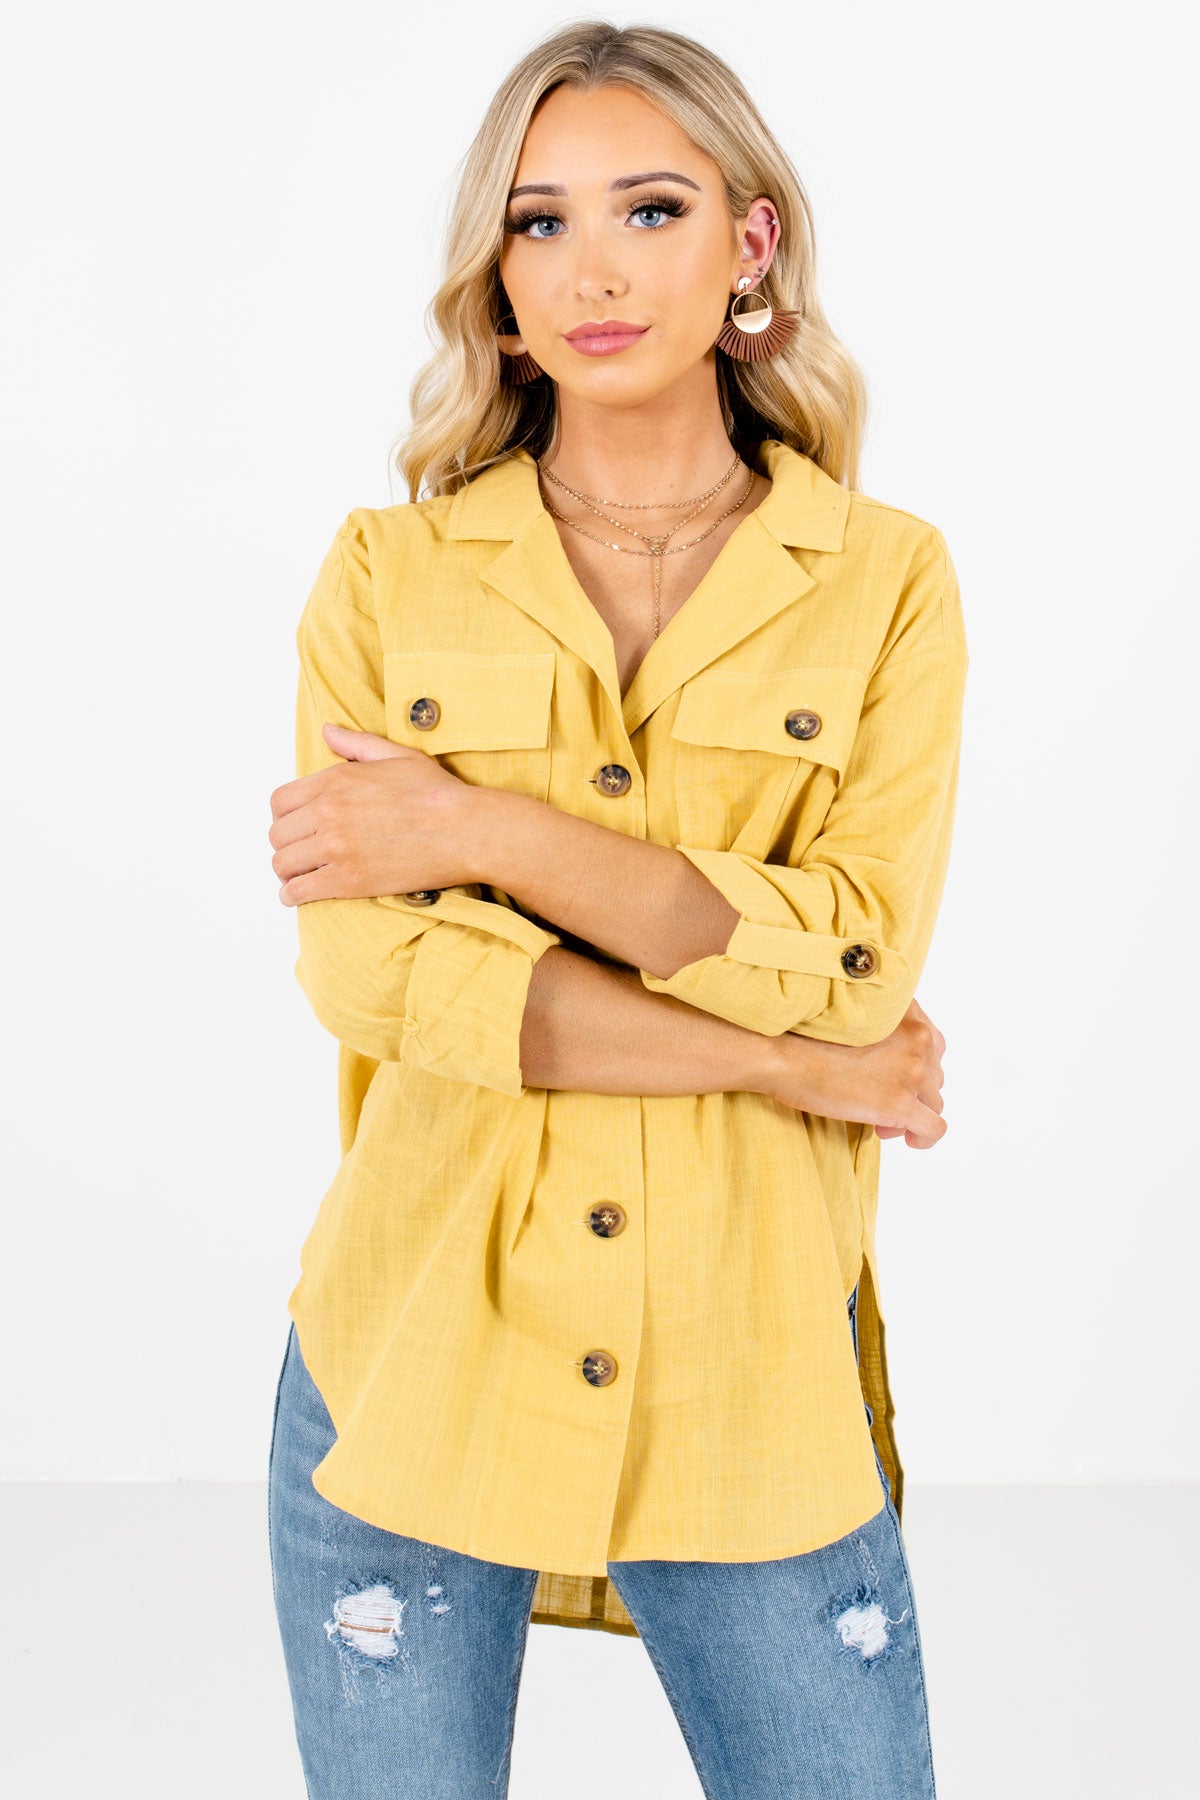 Women’s Yellow Business Casual Boutique Shirt